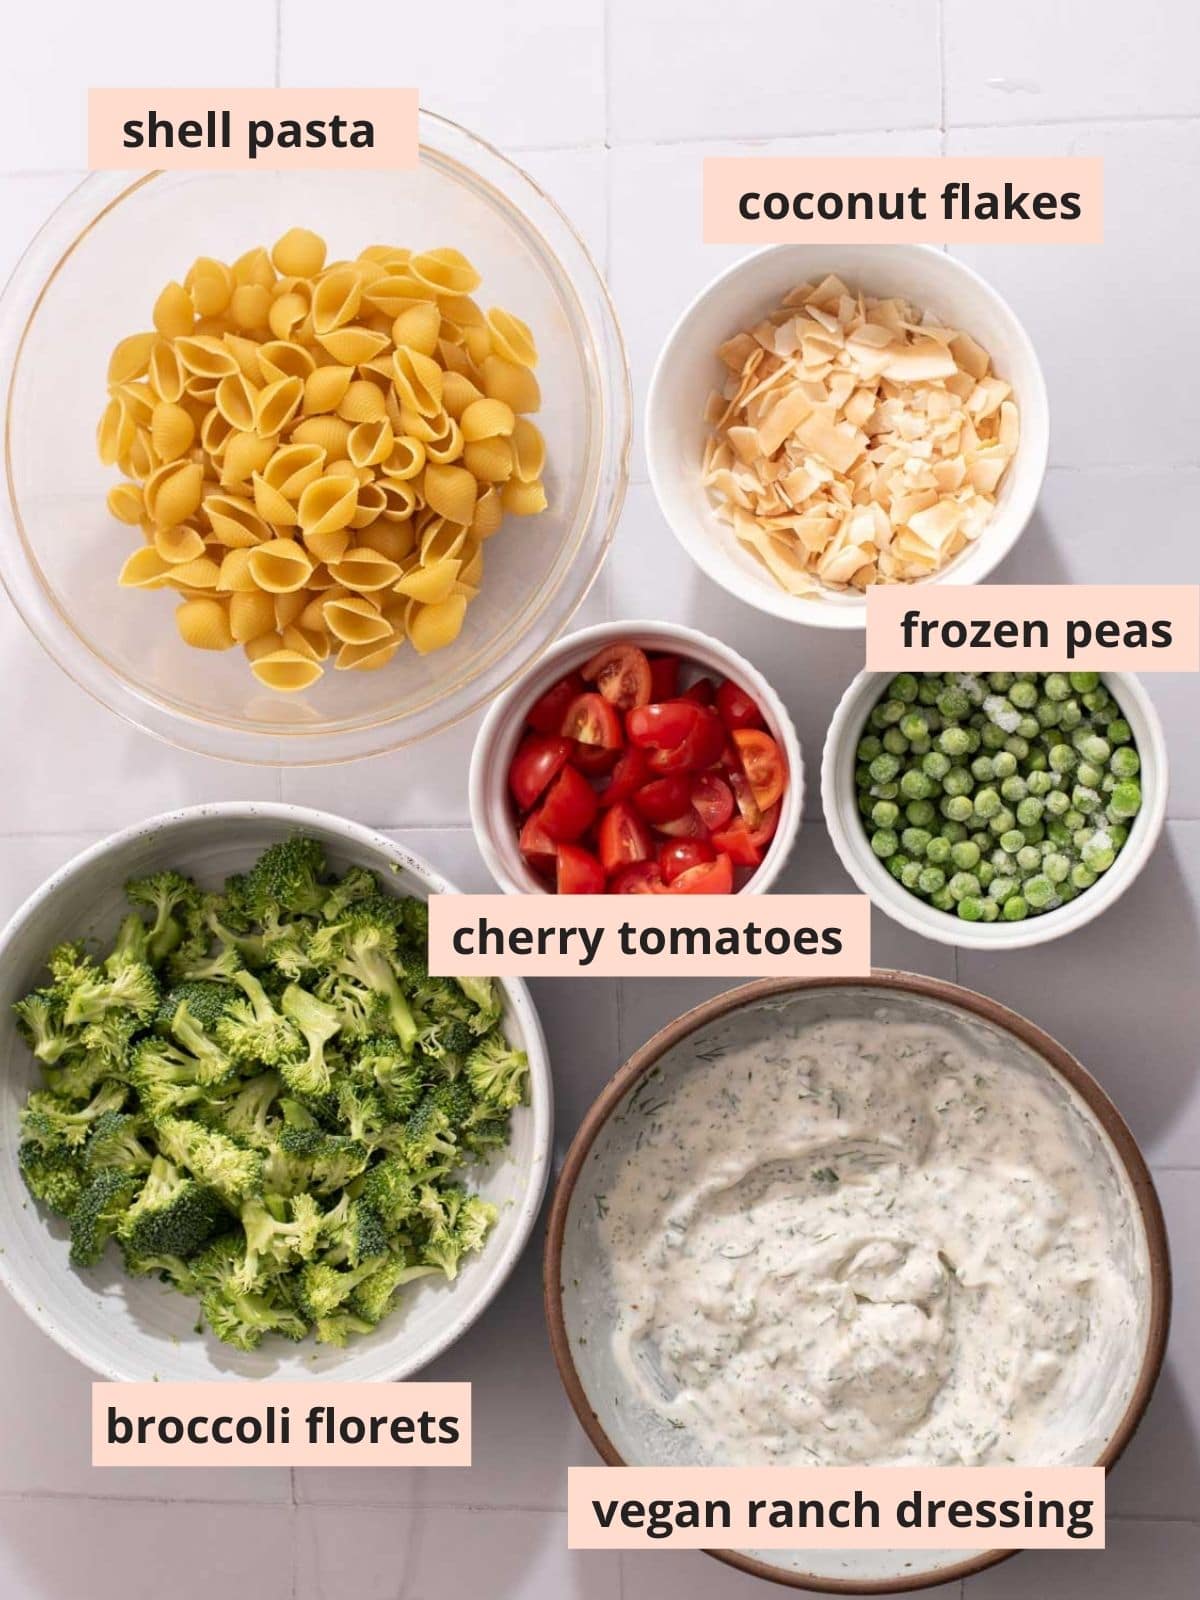 Labeled ingredients to make pasta salad.